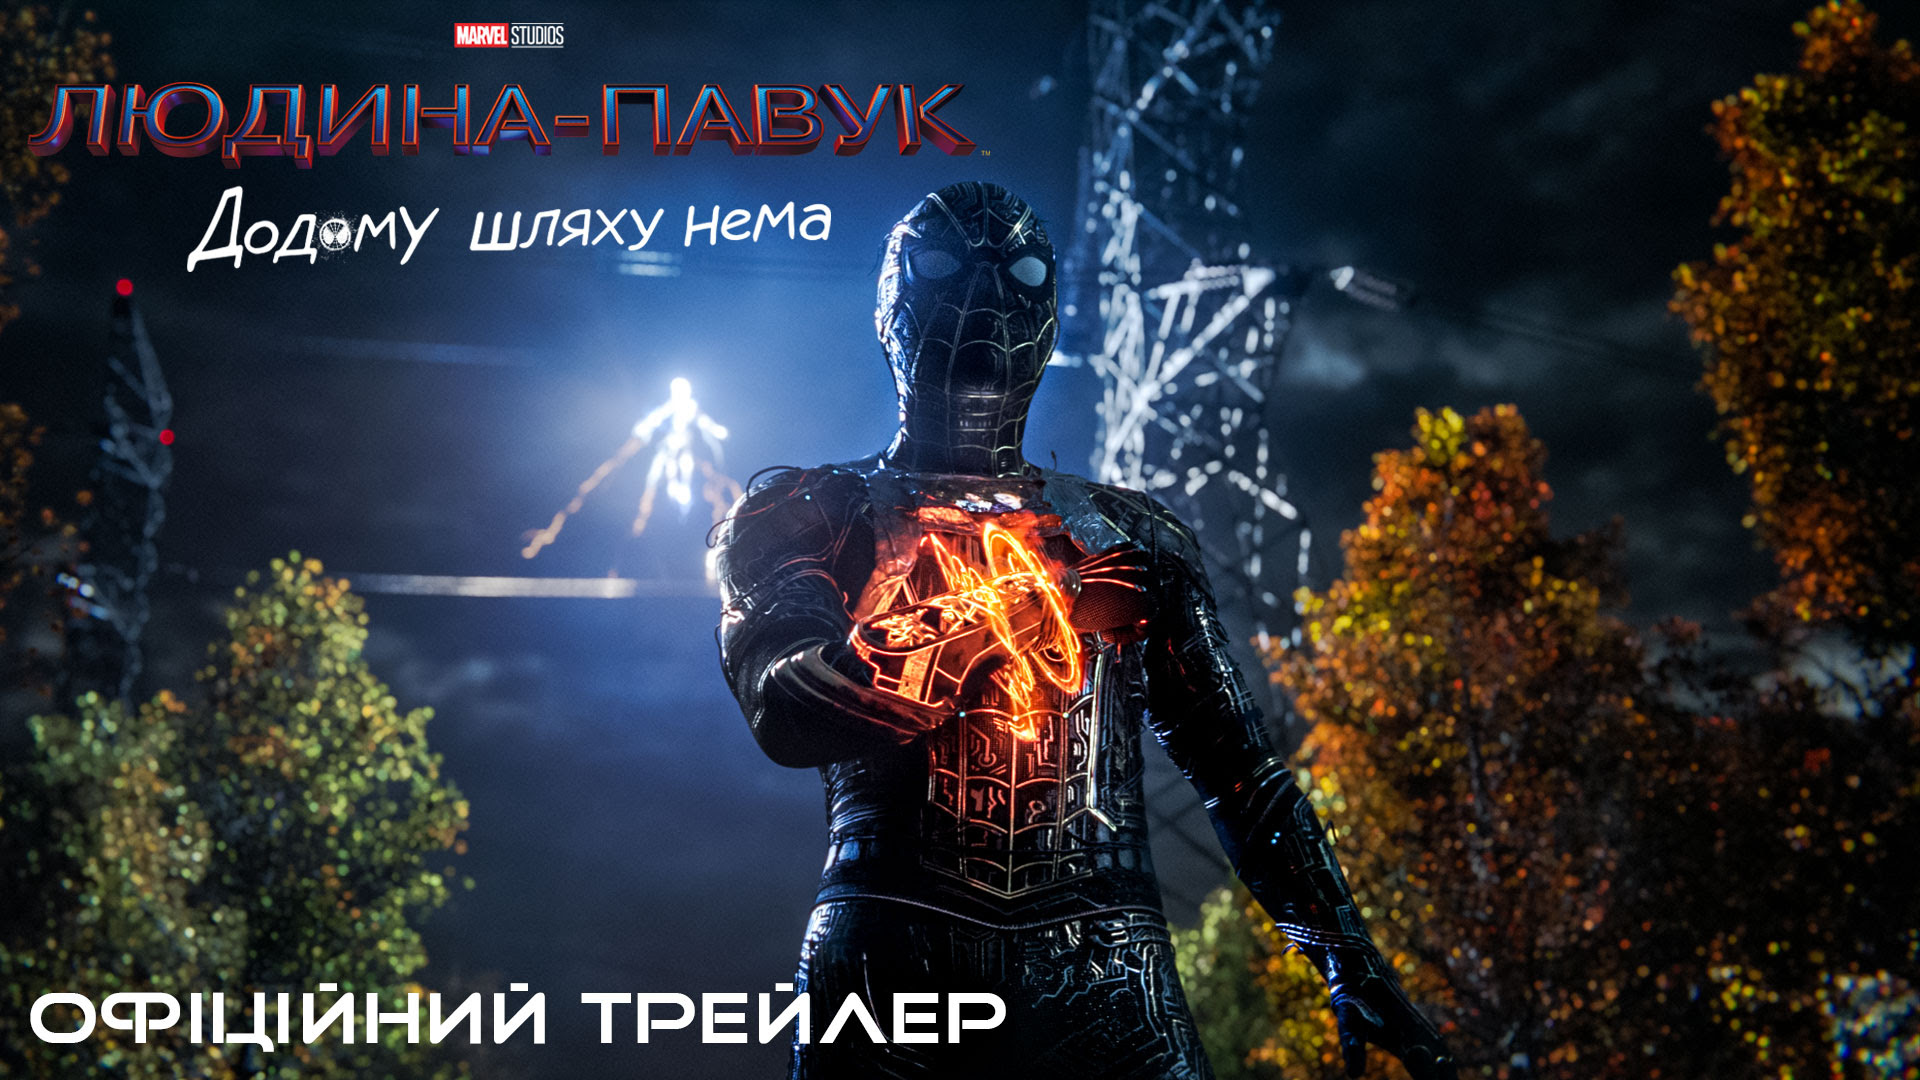 «Людина-павук: Додому шляху нема»: вийшов новий український трейлер